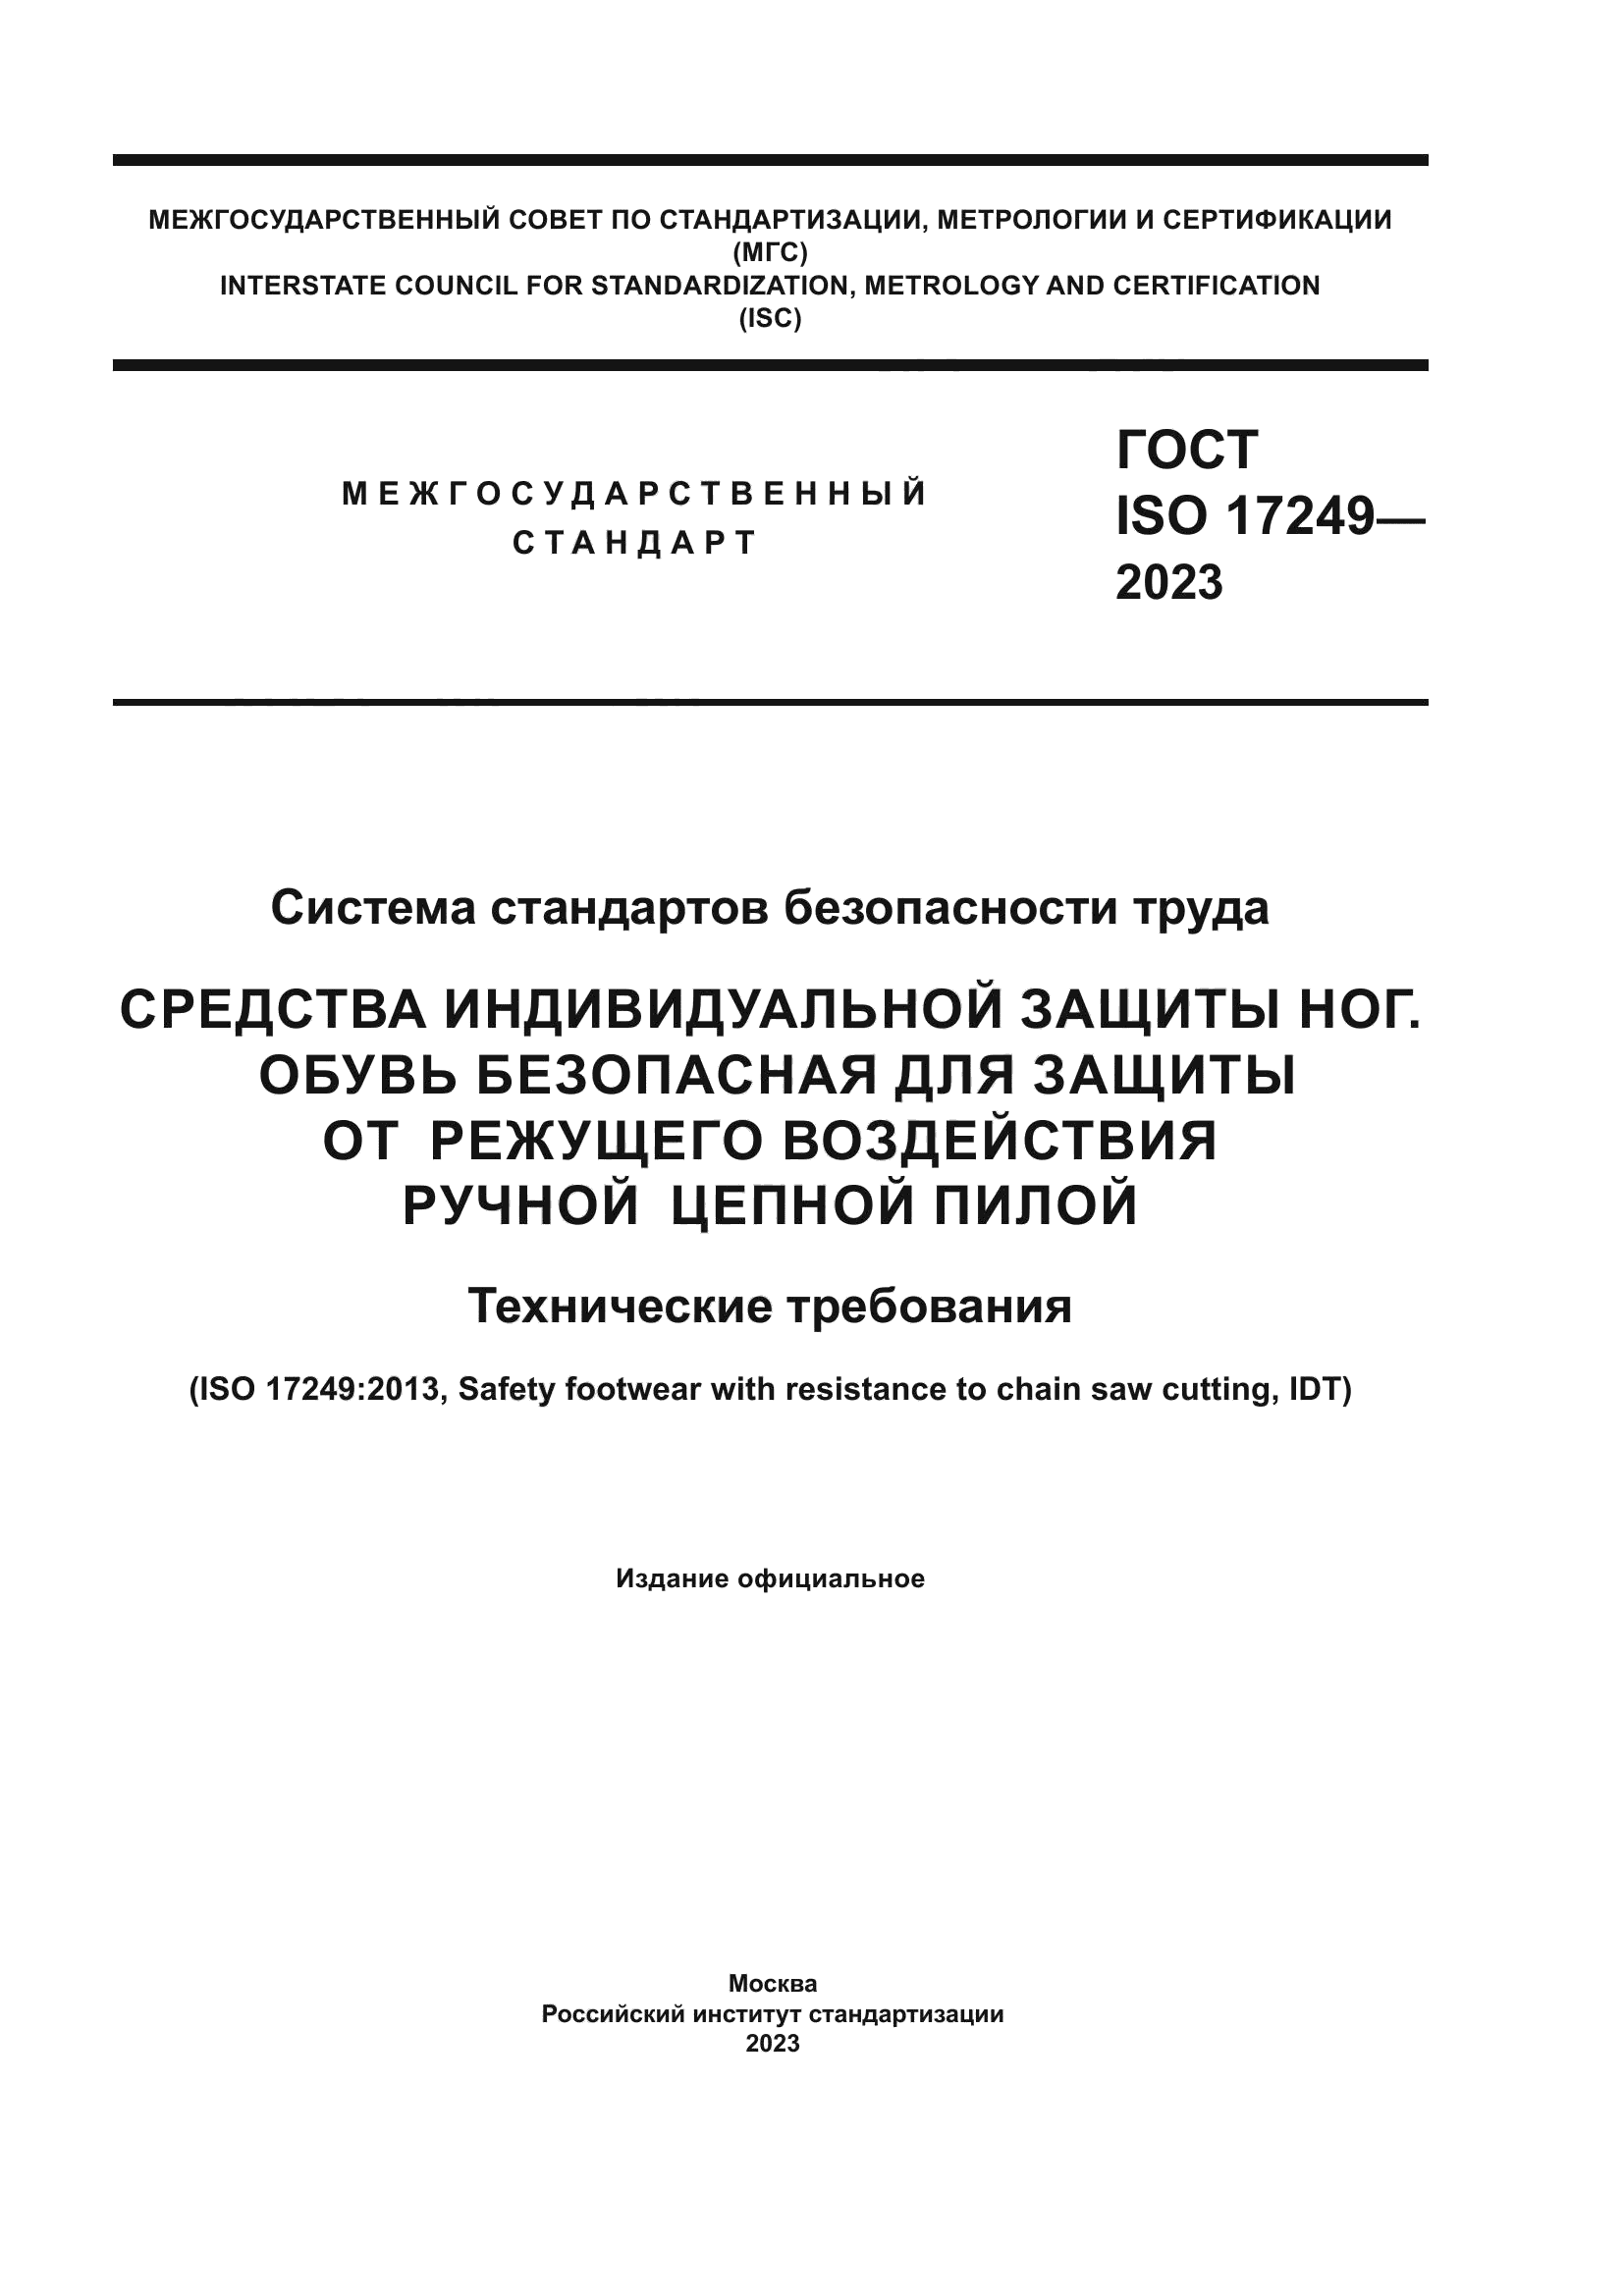 ГОСТ ISO 17249-2023